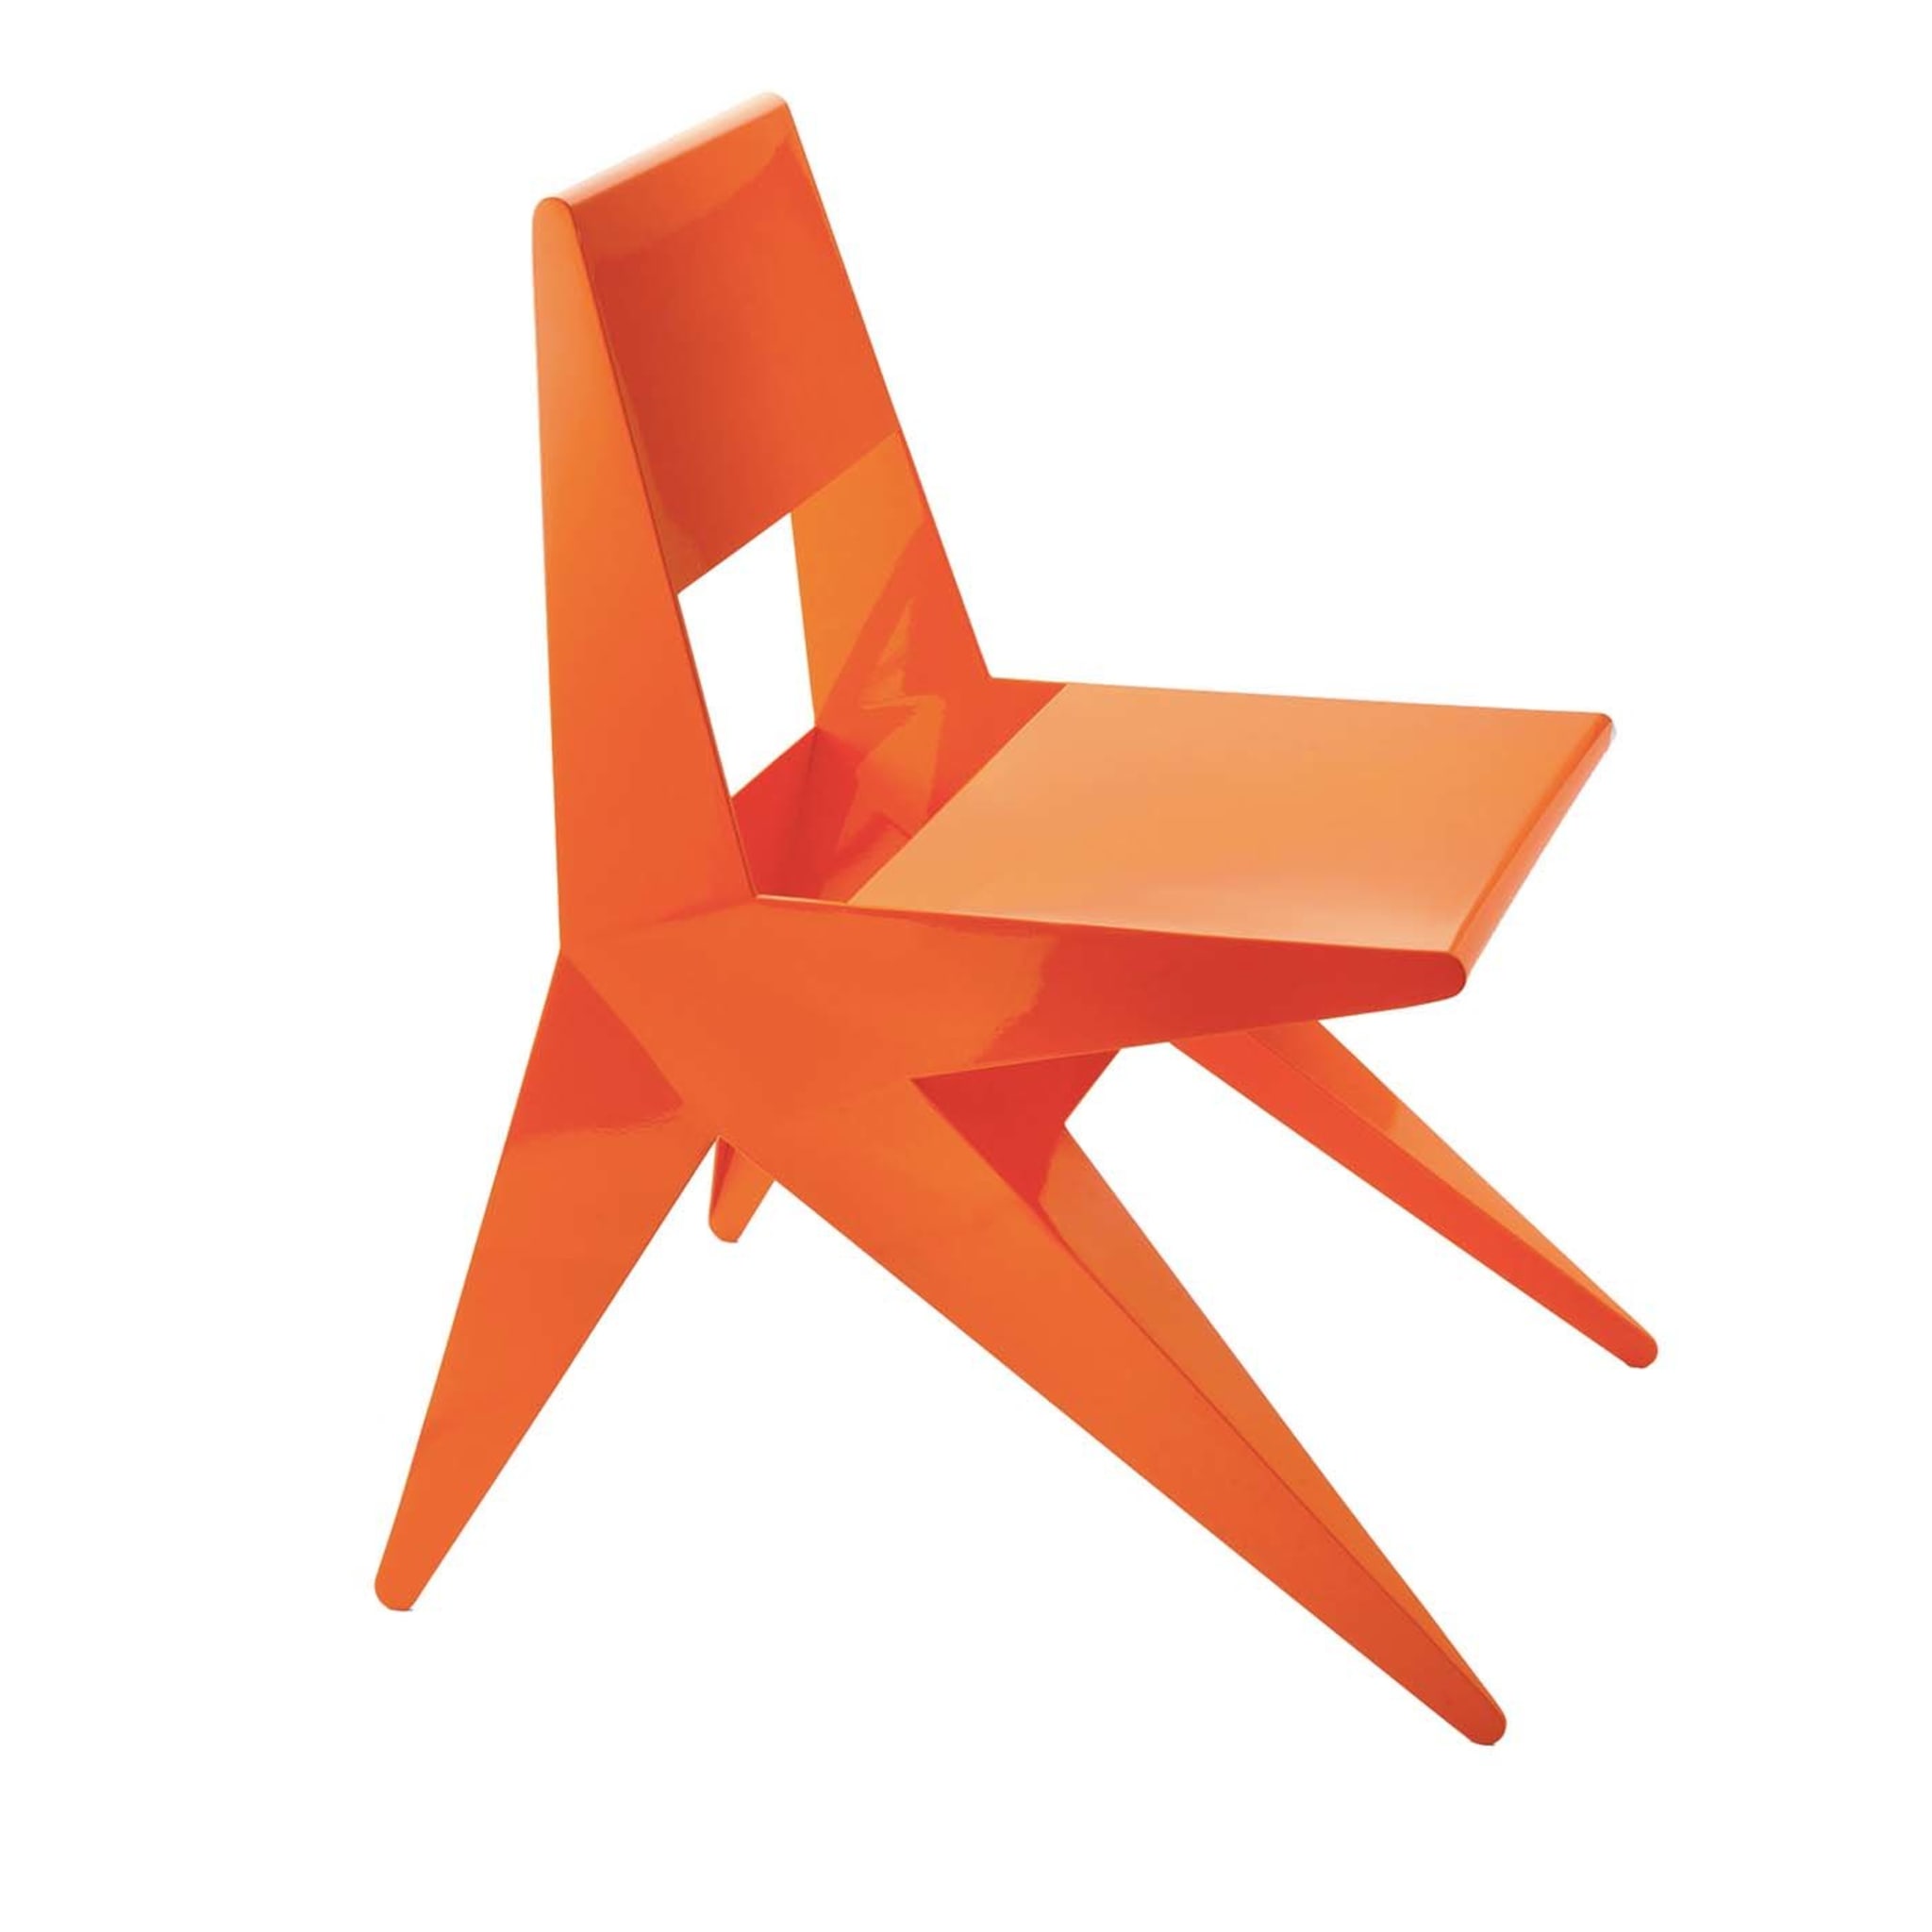 Star Orange Chair by Antonio Pio Saracino - Main view